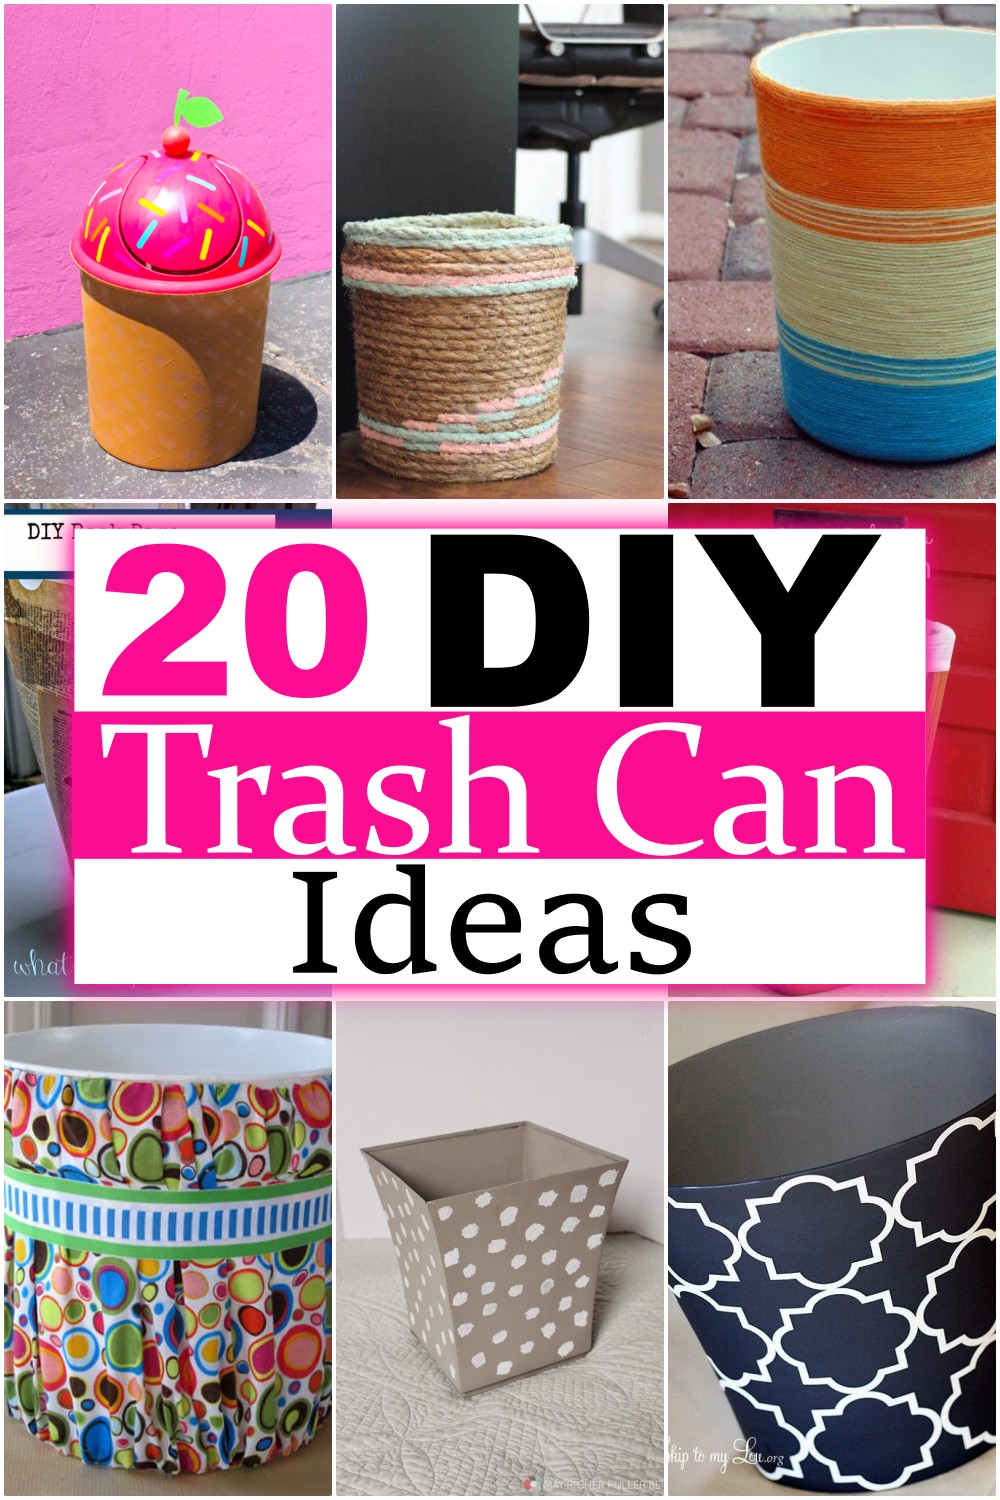 DIY Trash Can Ideas 